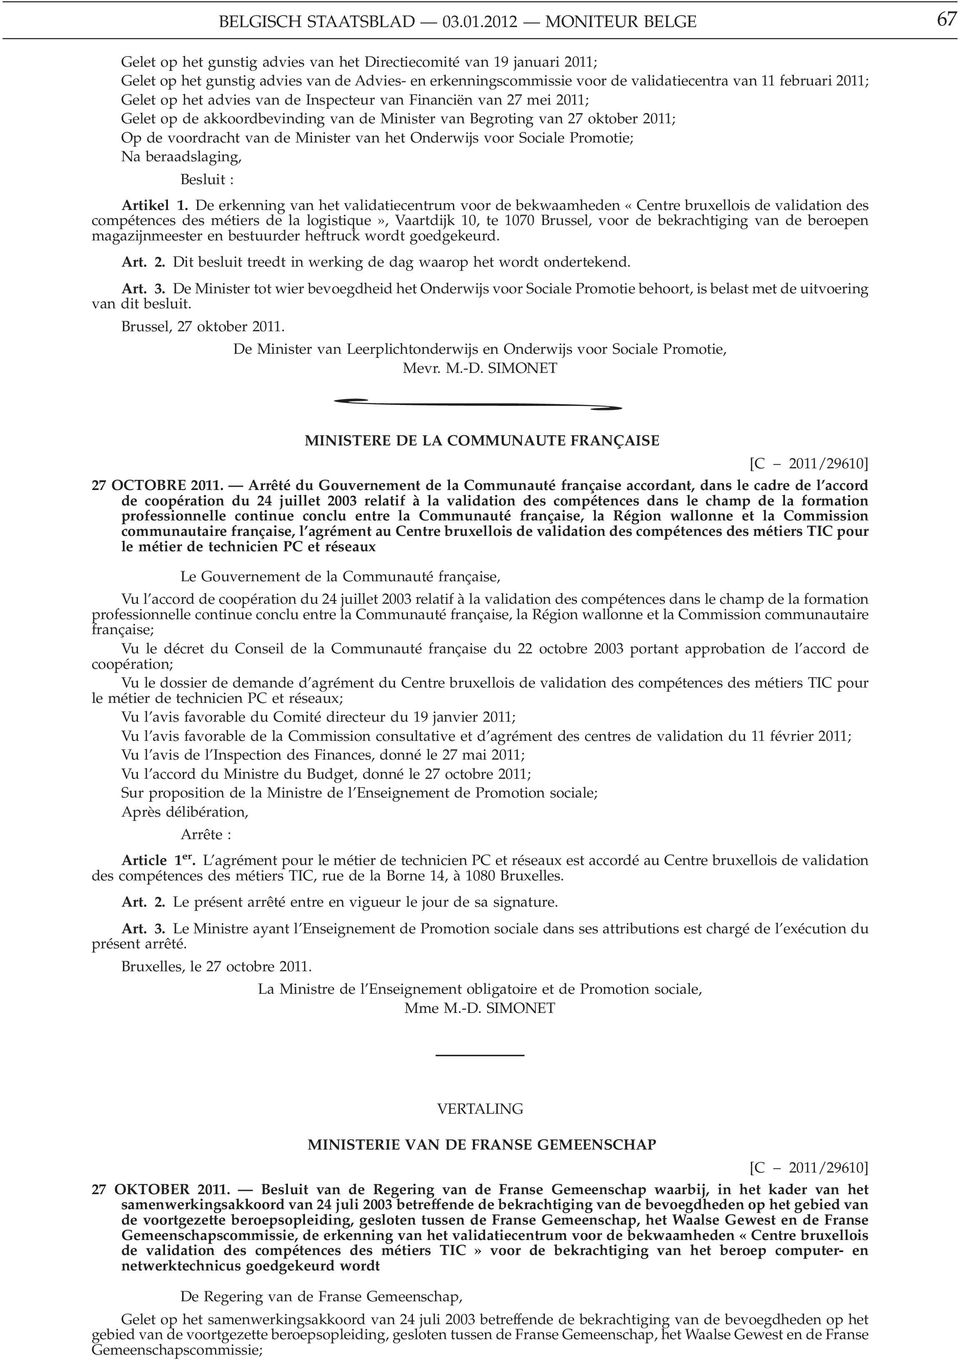 februari 2011; Gelet op het advies van de Inspecteur van Financiën van 27 mei 2011; Gelet op de akkoordbevinding van de Minister van Begroting van 27 oktober 2011; Op de voordracht van de Minister